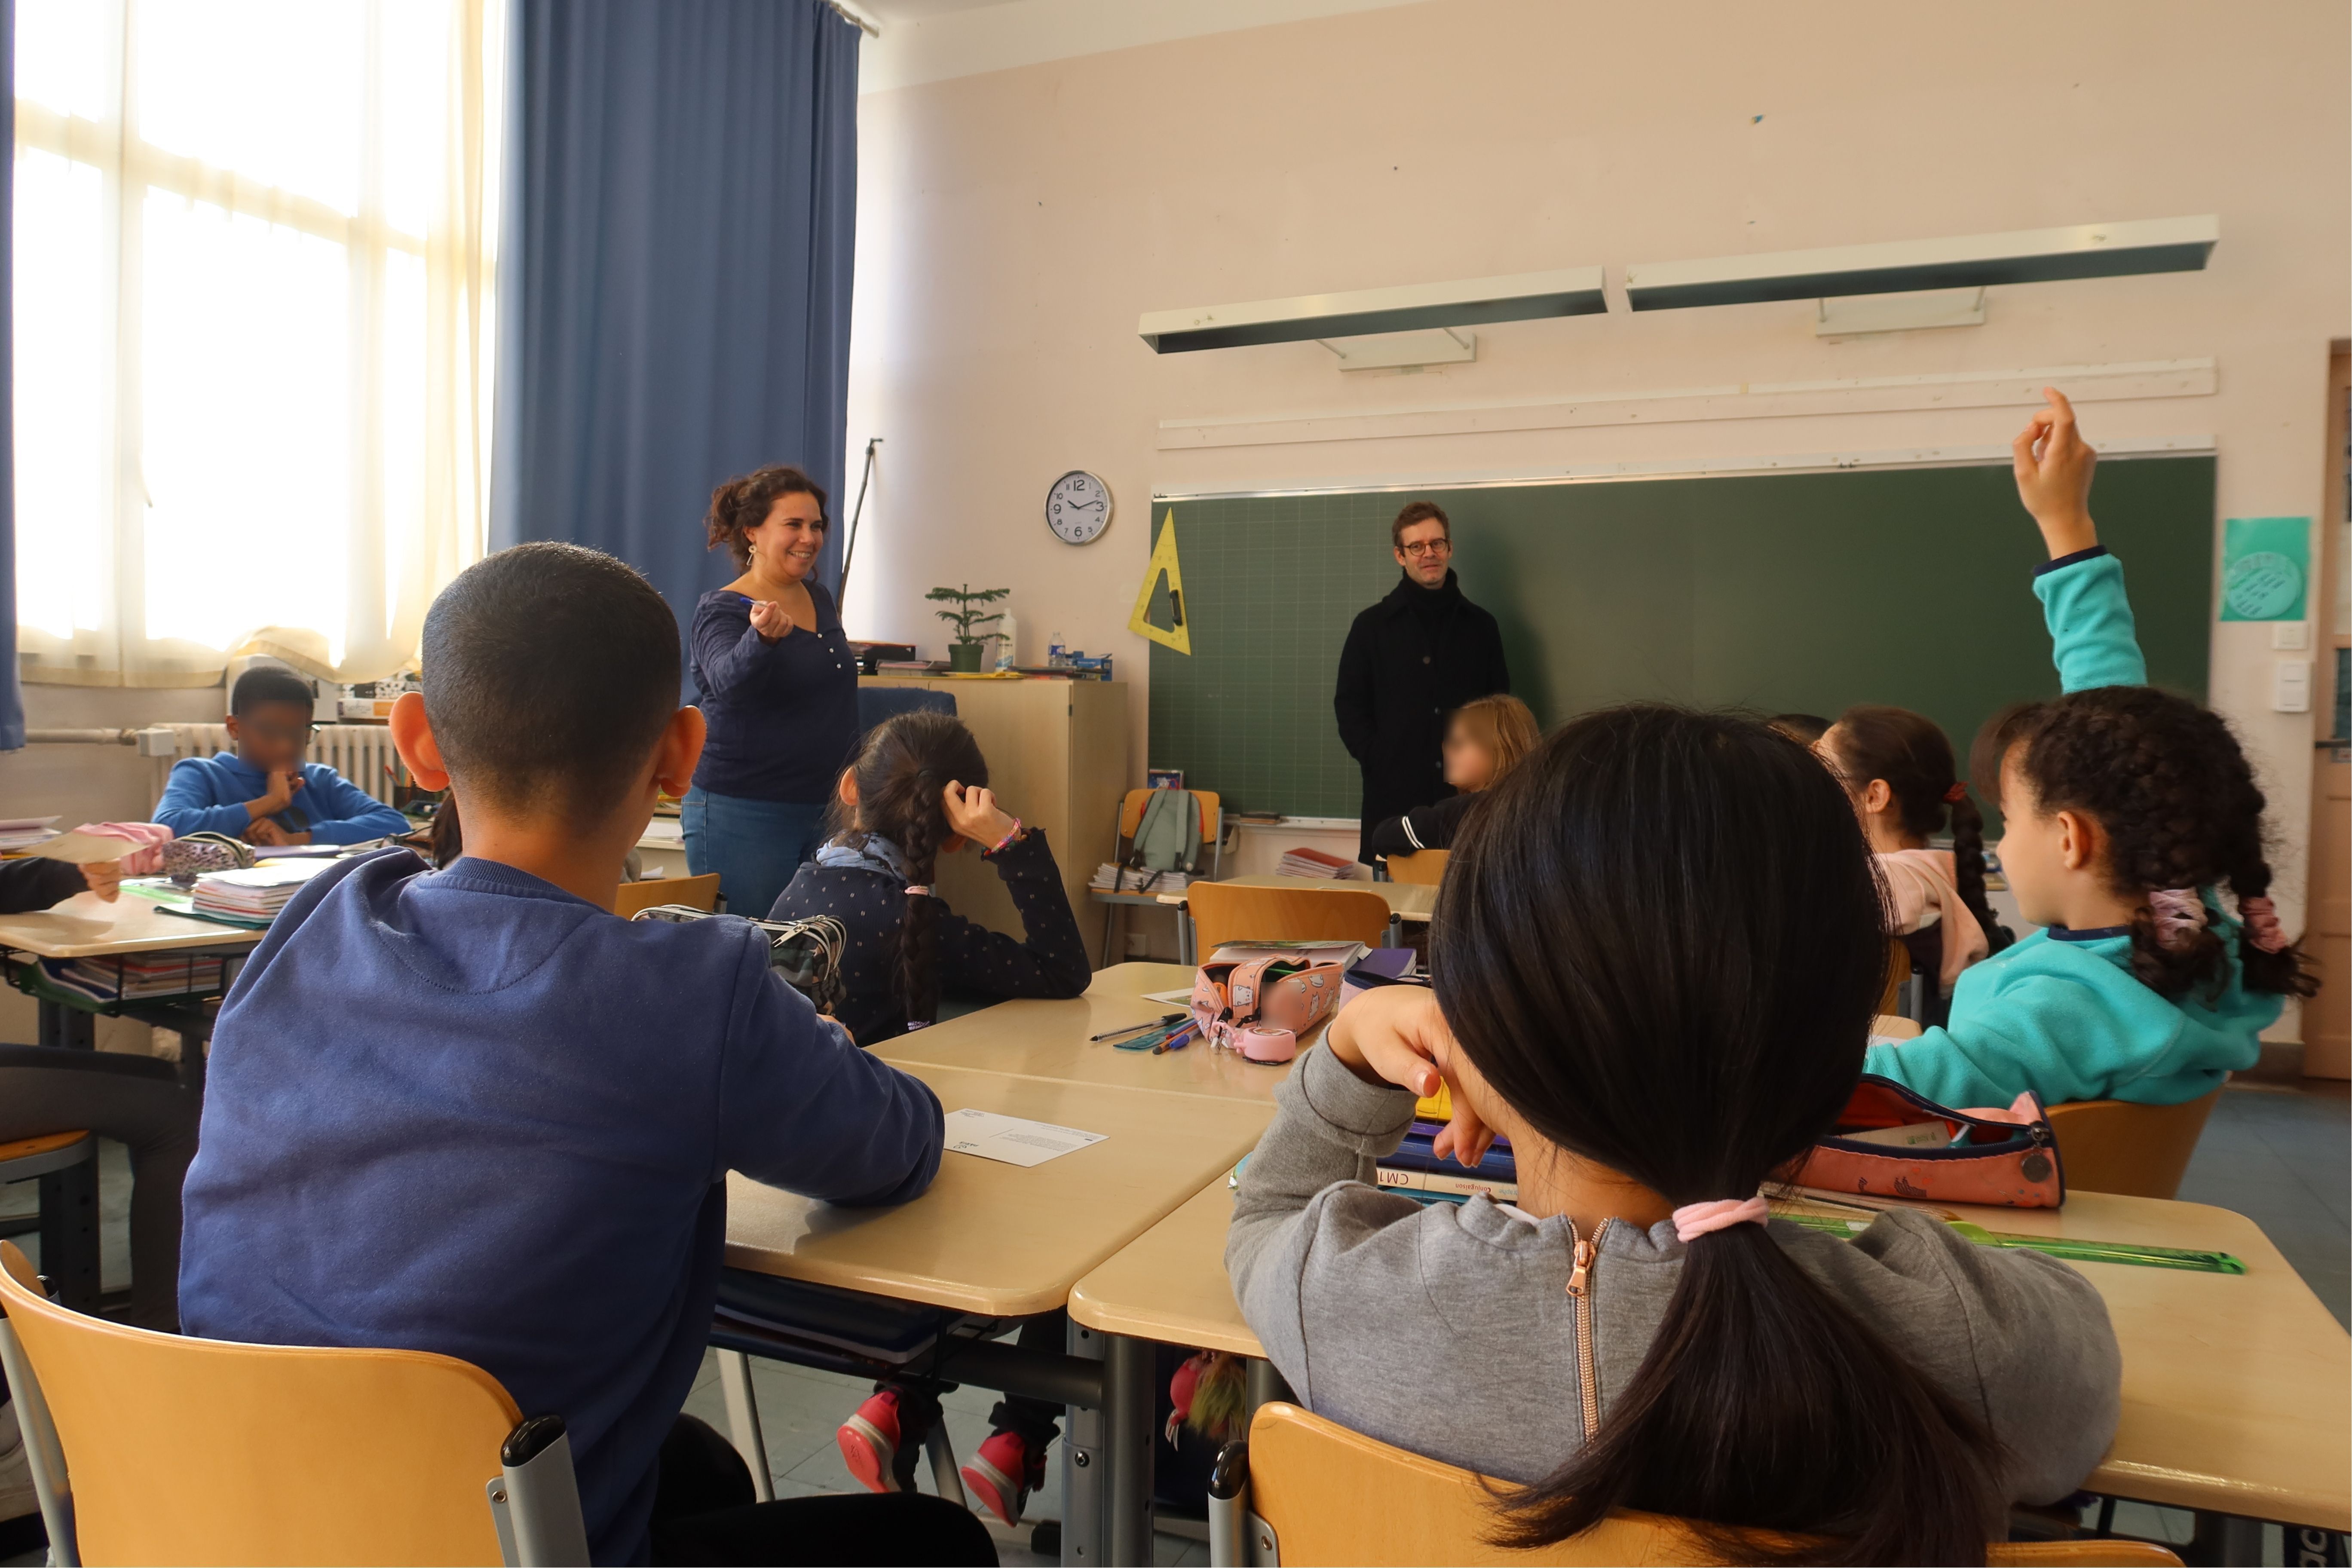 Dans une salle de classe, les élèves sont assis la main levée. Ils attendent que leur institutrice les désigne pour partager leurs impressions sur la rencontre avec Armand Jalut. L'artiste les regarde en souriant adossé au tableau noir.